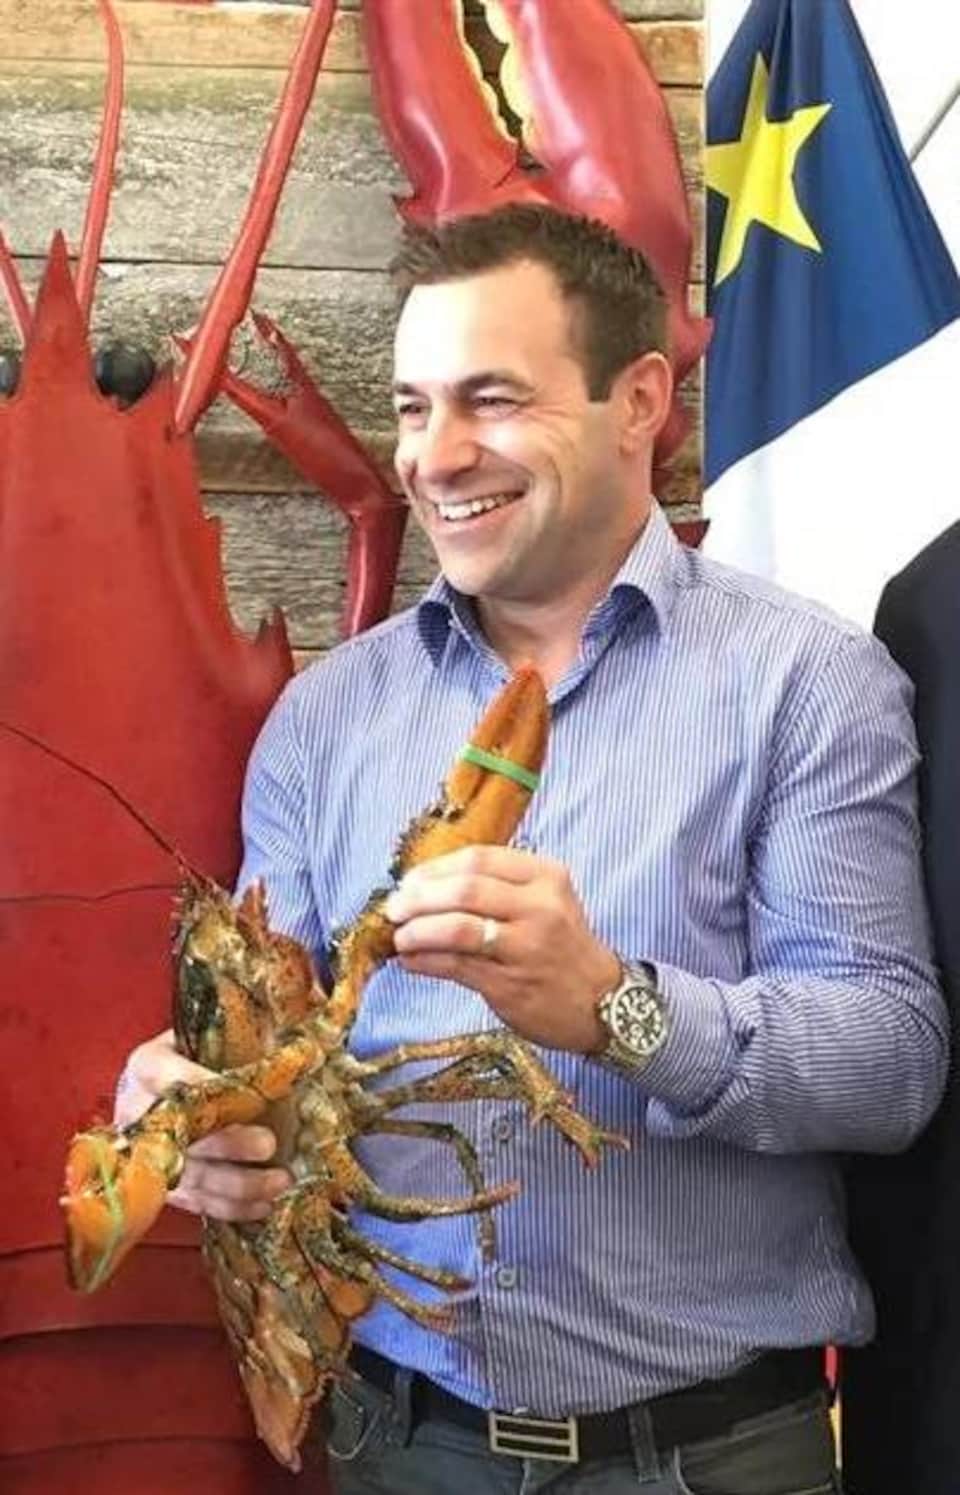 Le ministre provincial Victor Boudreau, Russel Jacob avec un homard dans les mains, et le ministre fédéral Dominic LeBlanc sourient à pleines dents pour une photo de groupe.